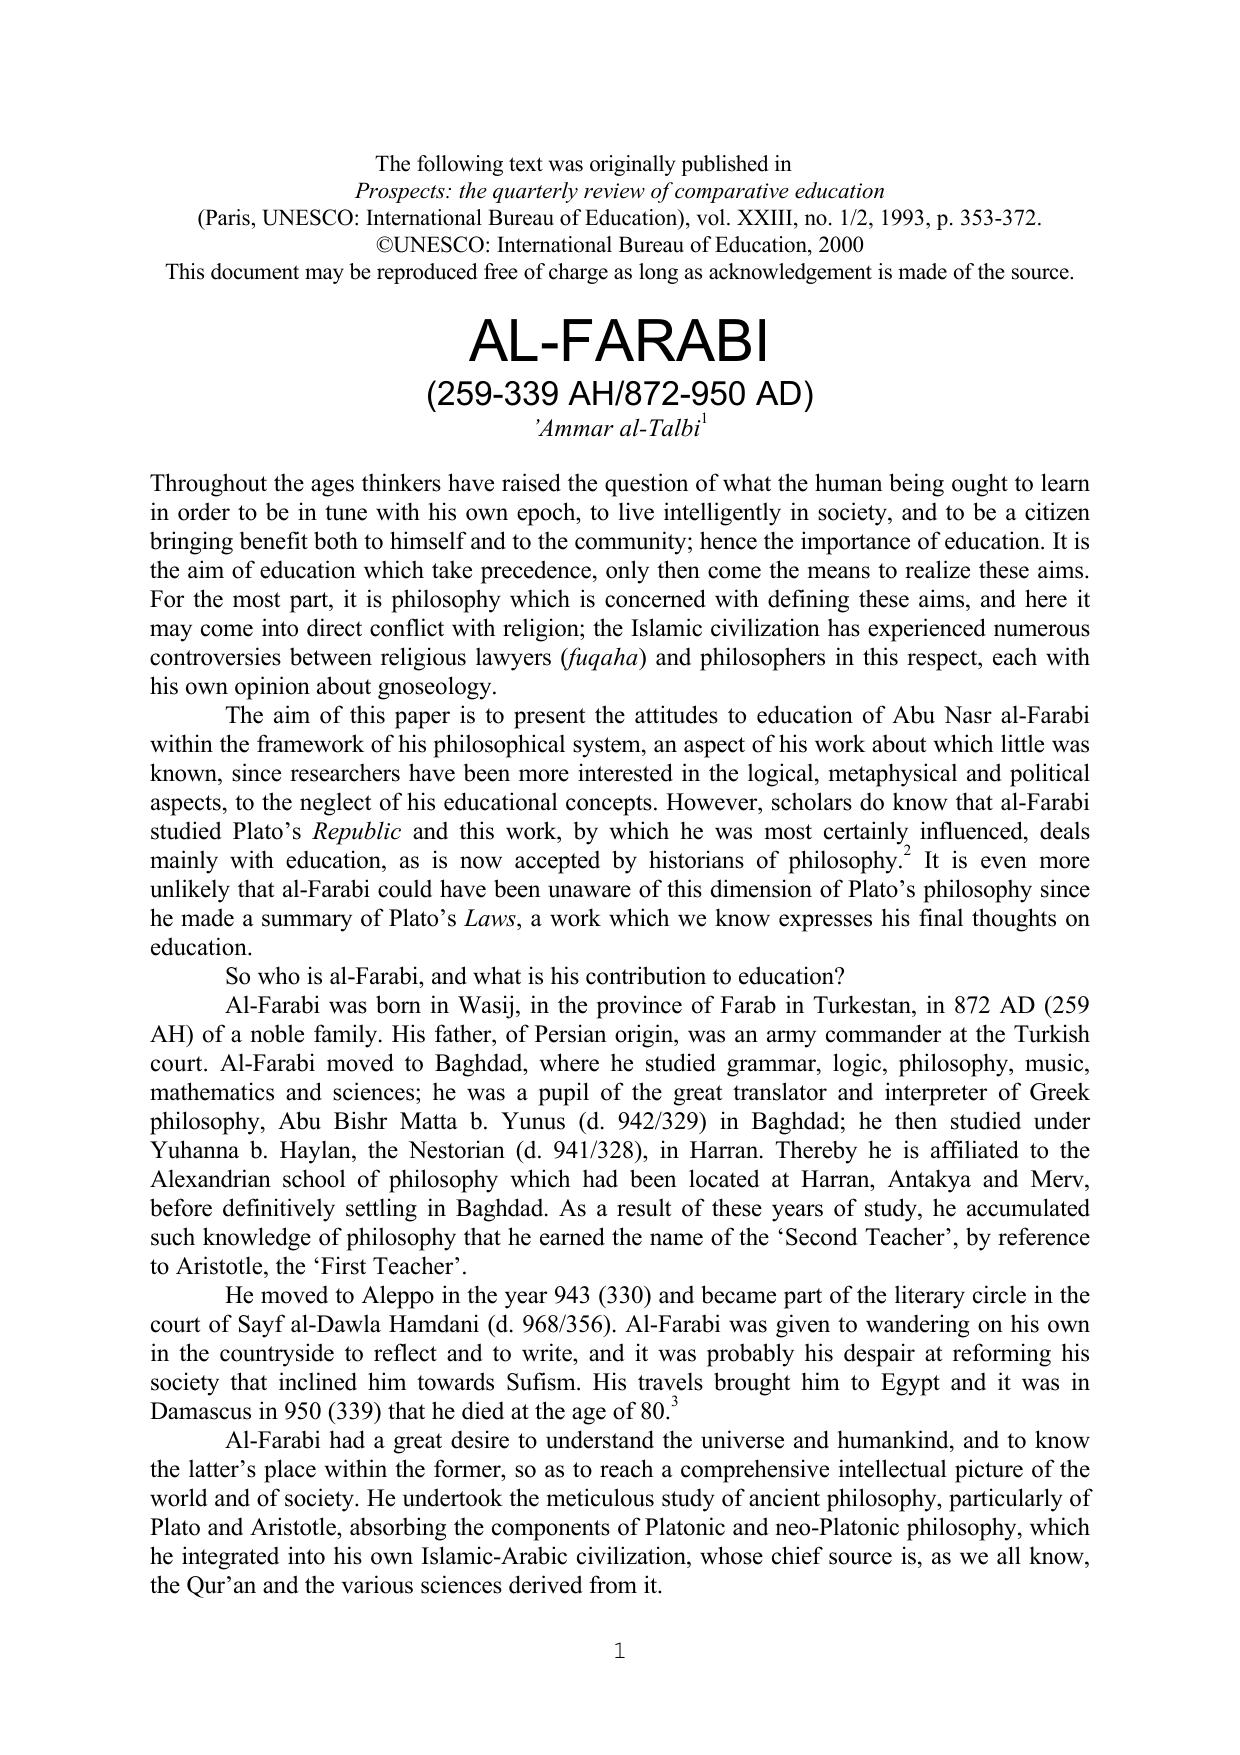 Al- Farabi